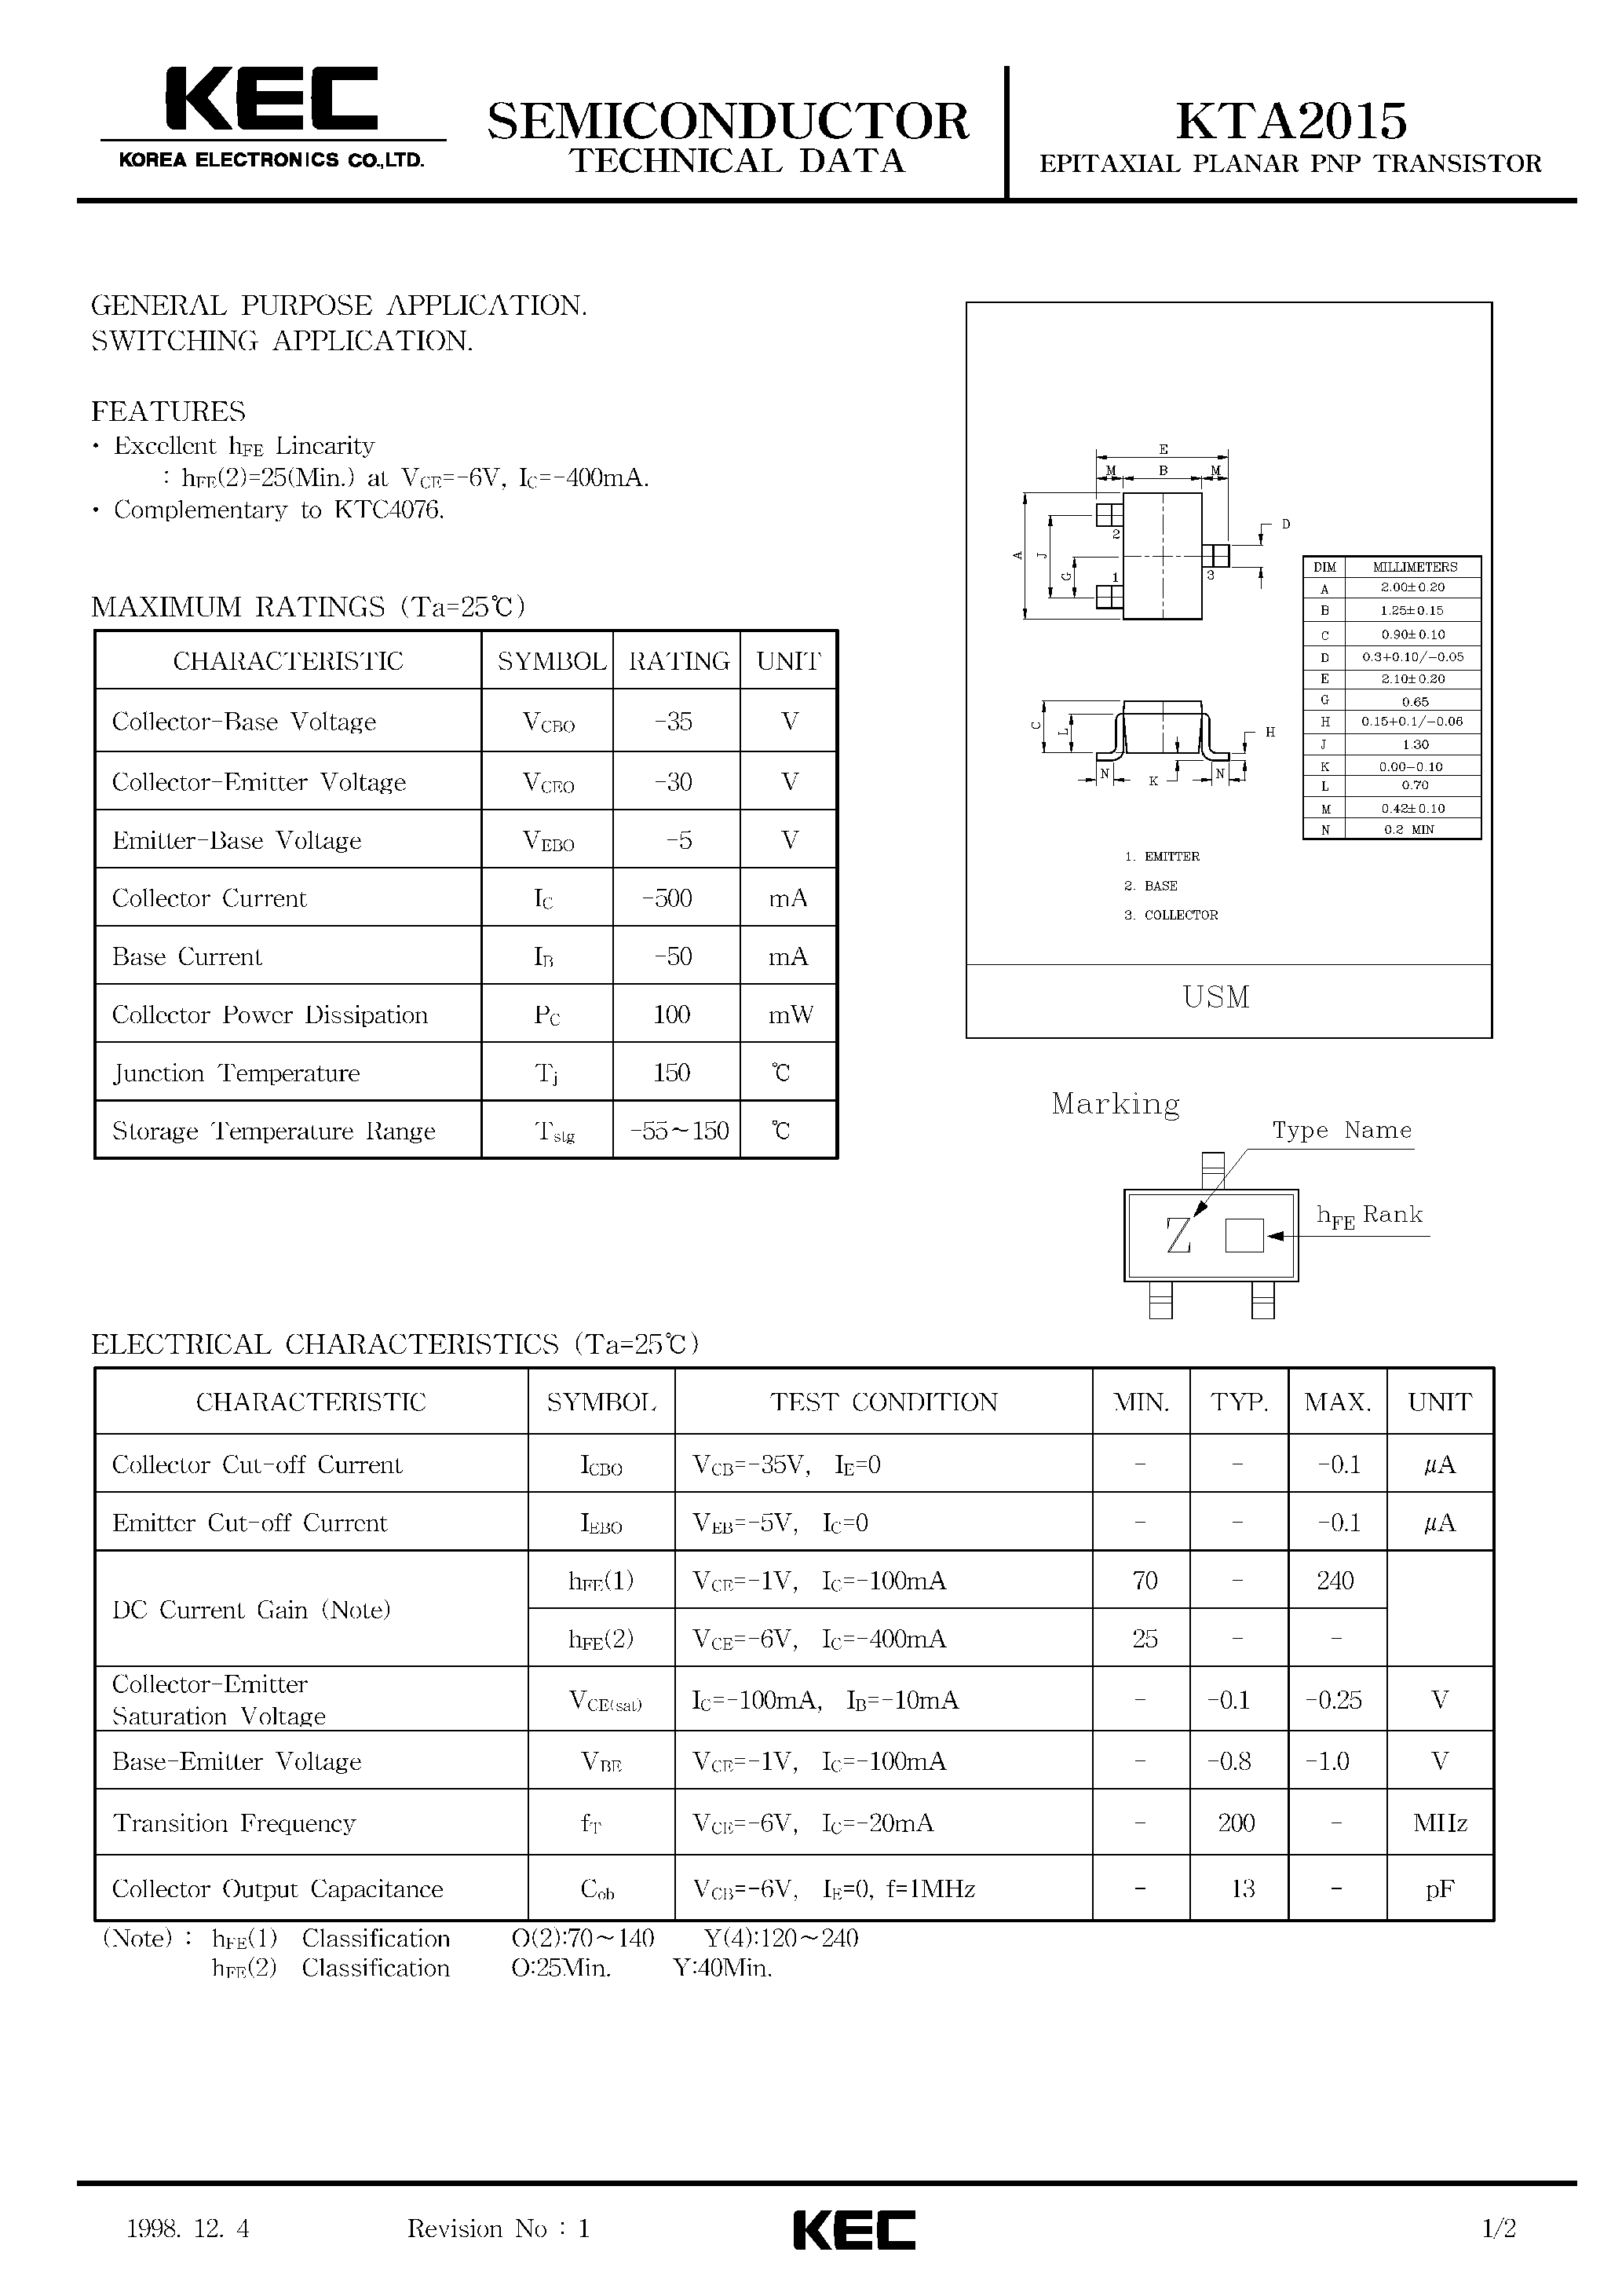 Datasheet KTA2015 - EPITAXIAL PLANAR PNP TRANSISTOR (GENERAL PURPOSE/ SWITCHING) page 1